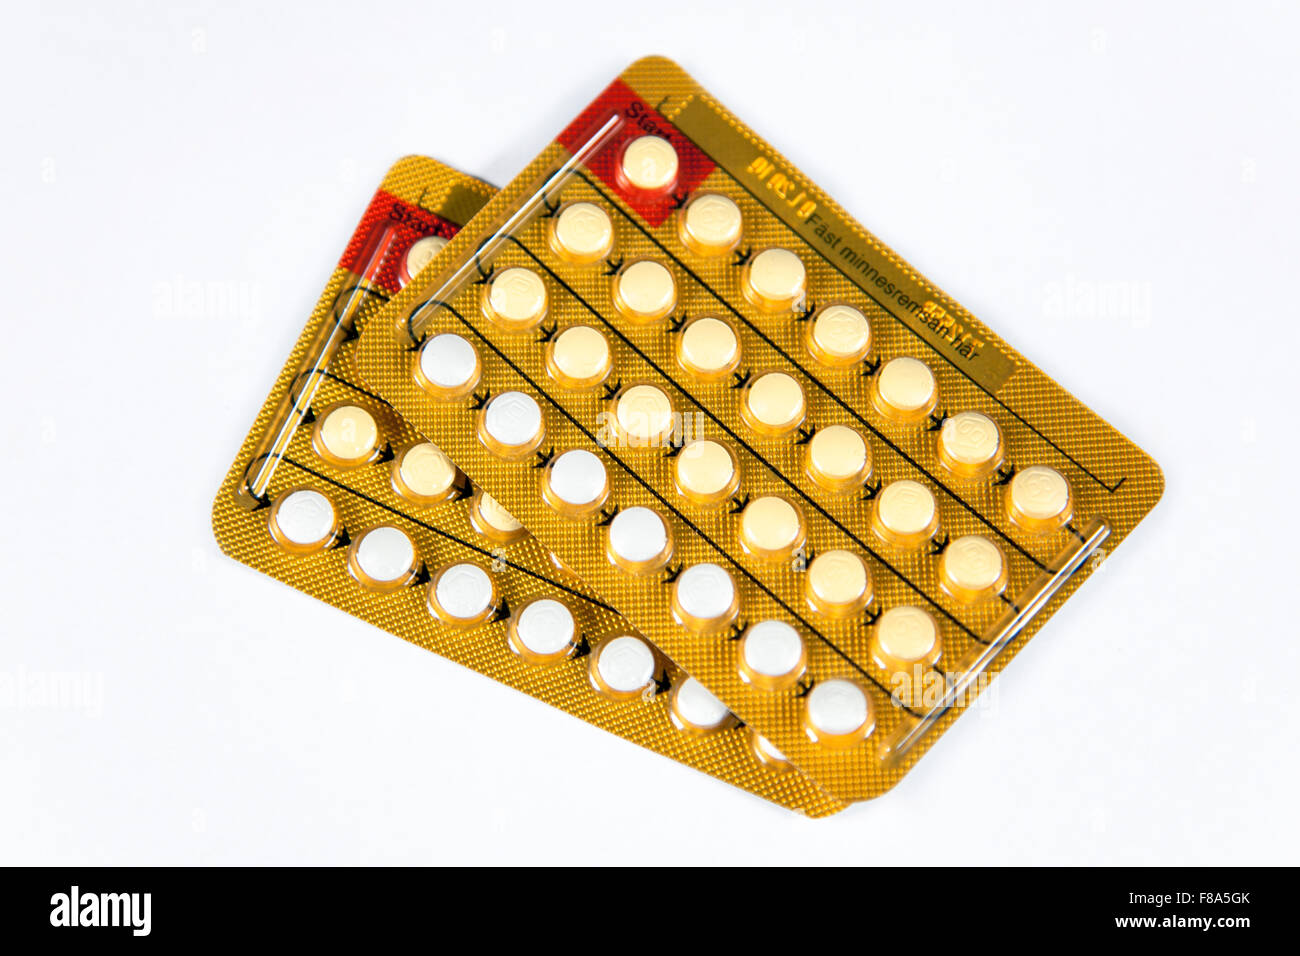 Foto de estudio de píldoras anticonceptivas en blisters sobre fondo blanco. Foto de stock